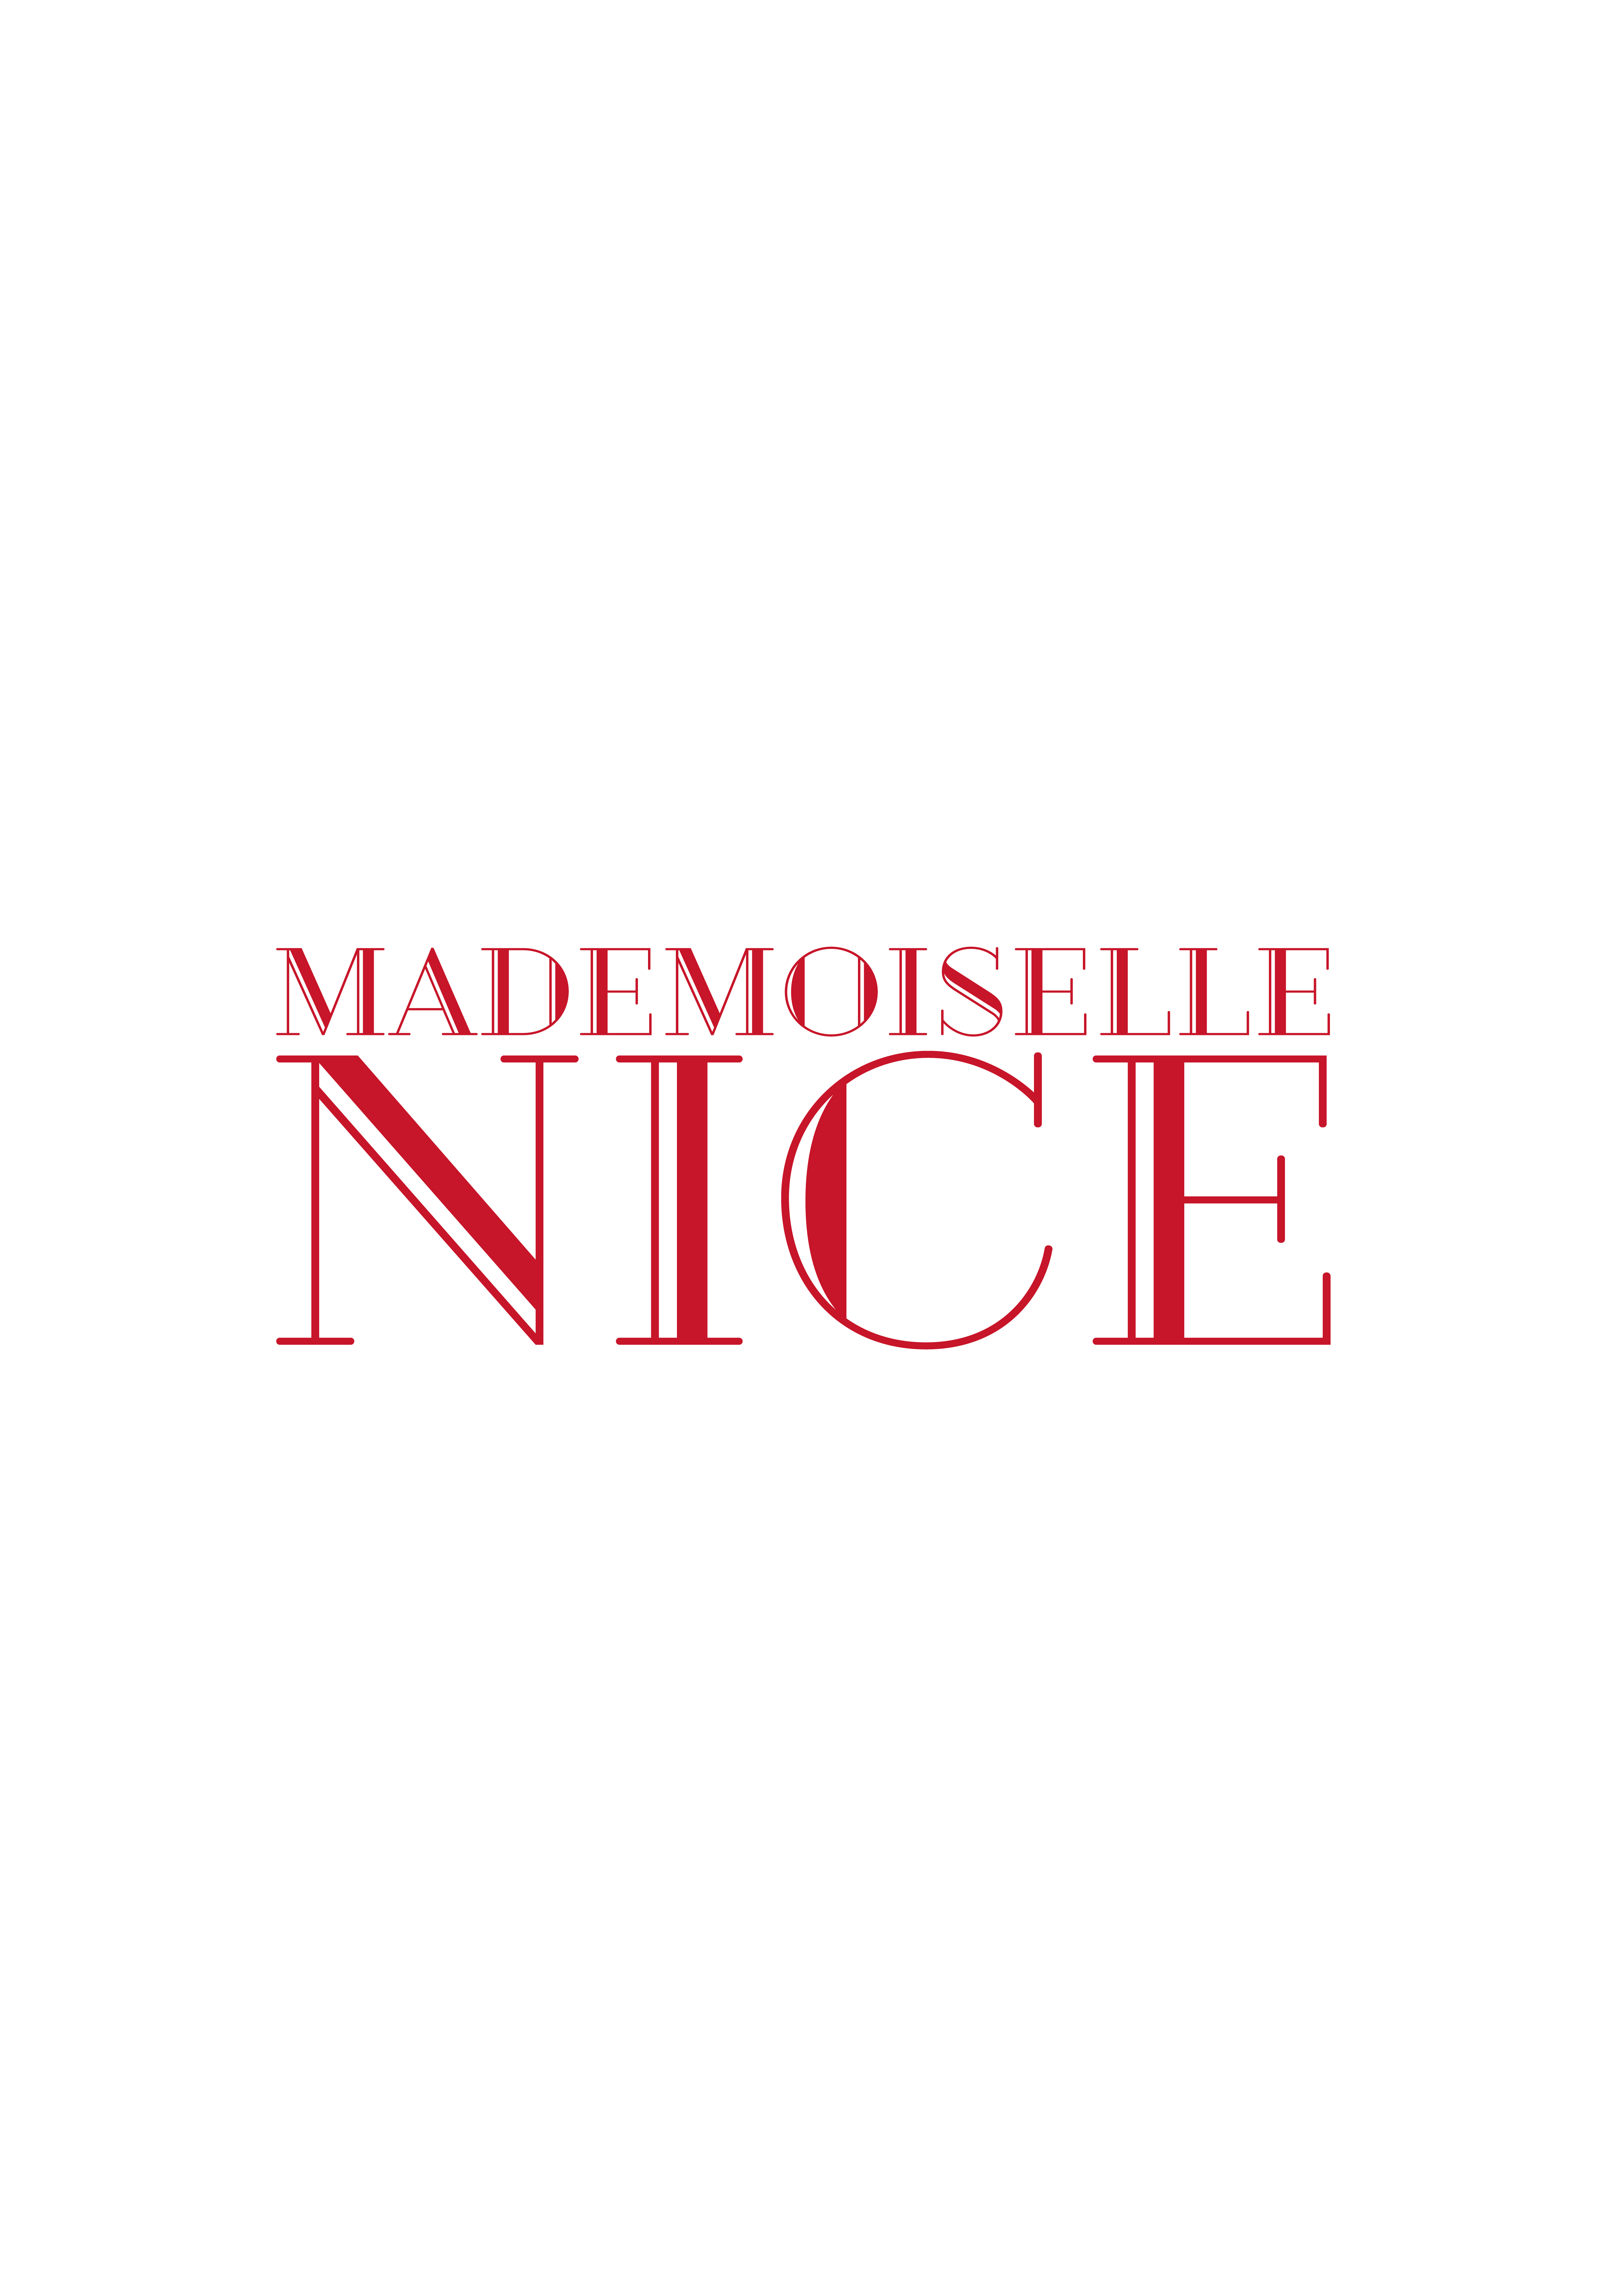 Ein Logo von Mademoiselle Nice, das durch die Markenentwicklung Stuttgart entstand in rot.